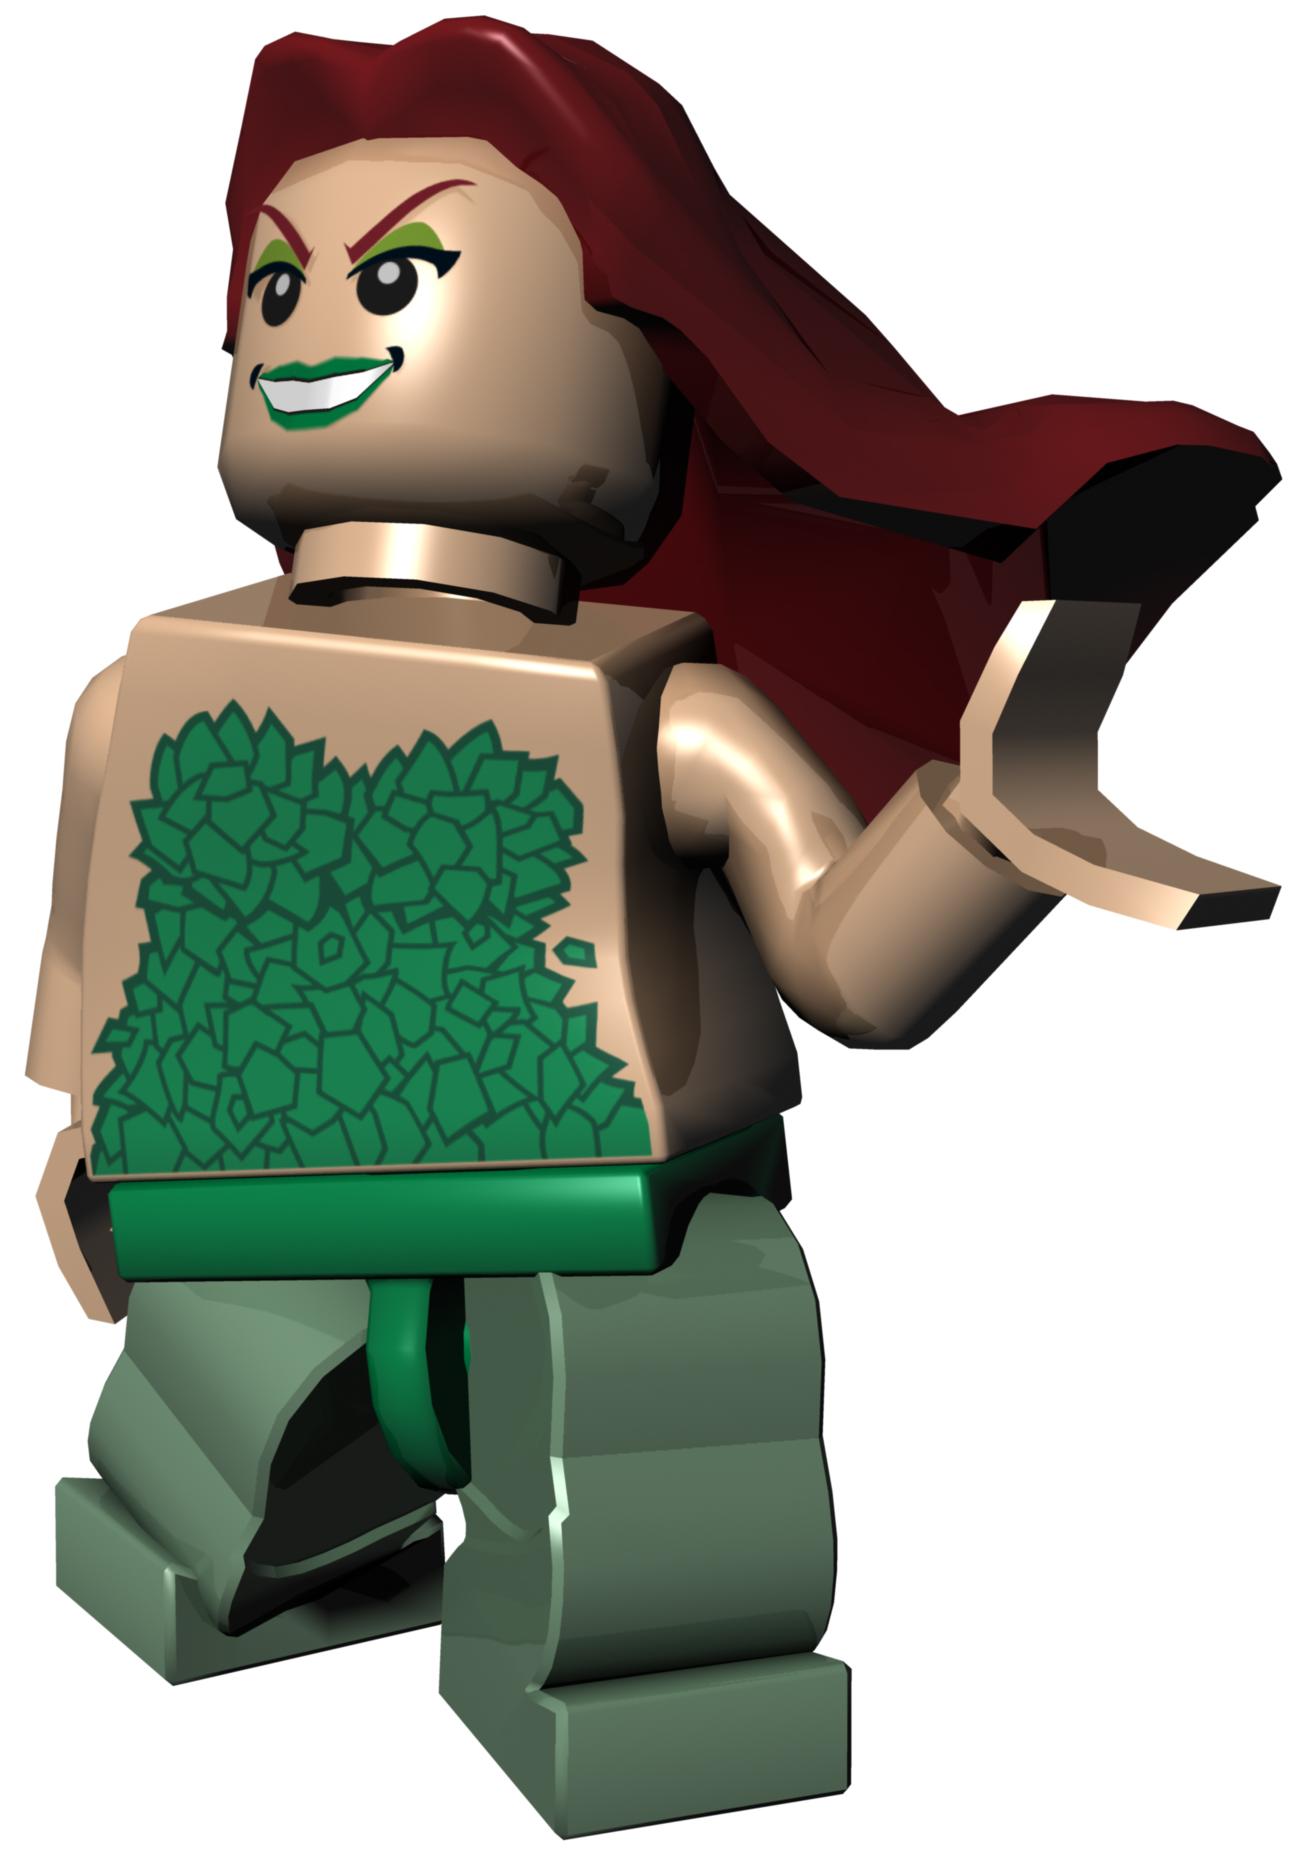 LEGO Batman: The Videogame Backgrounds, Compatible - PC, Mobile, Gadgets| 1314x1862 px